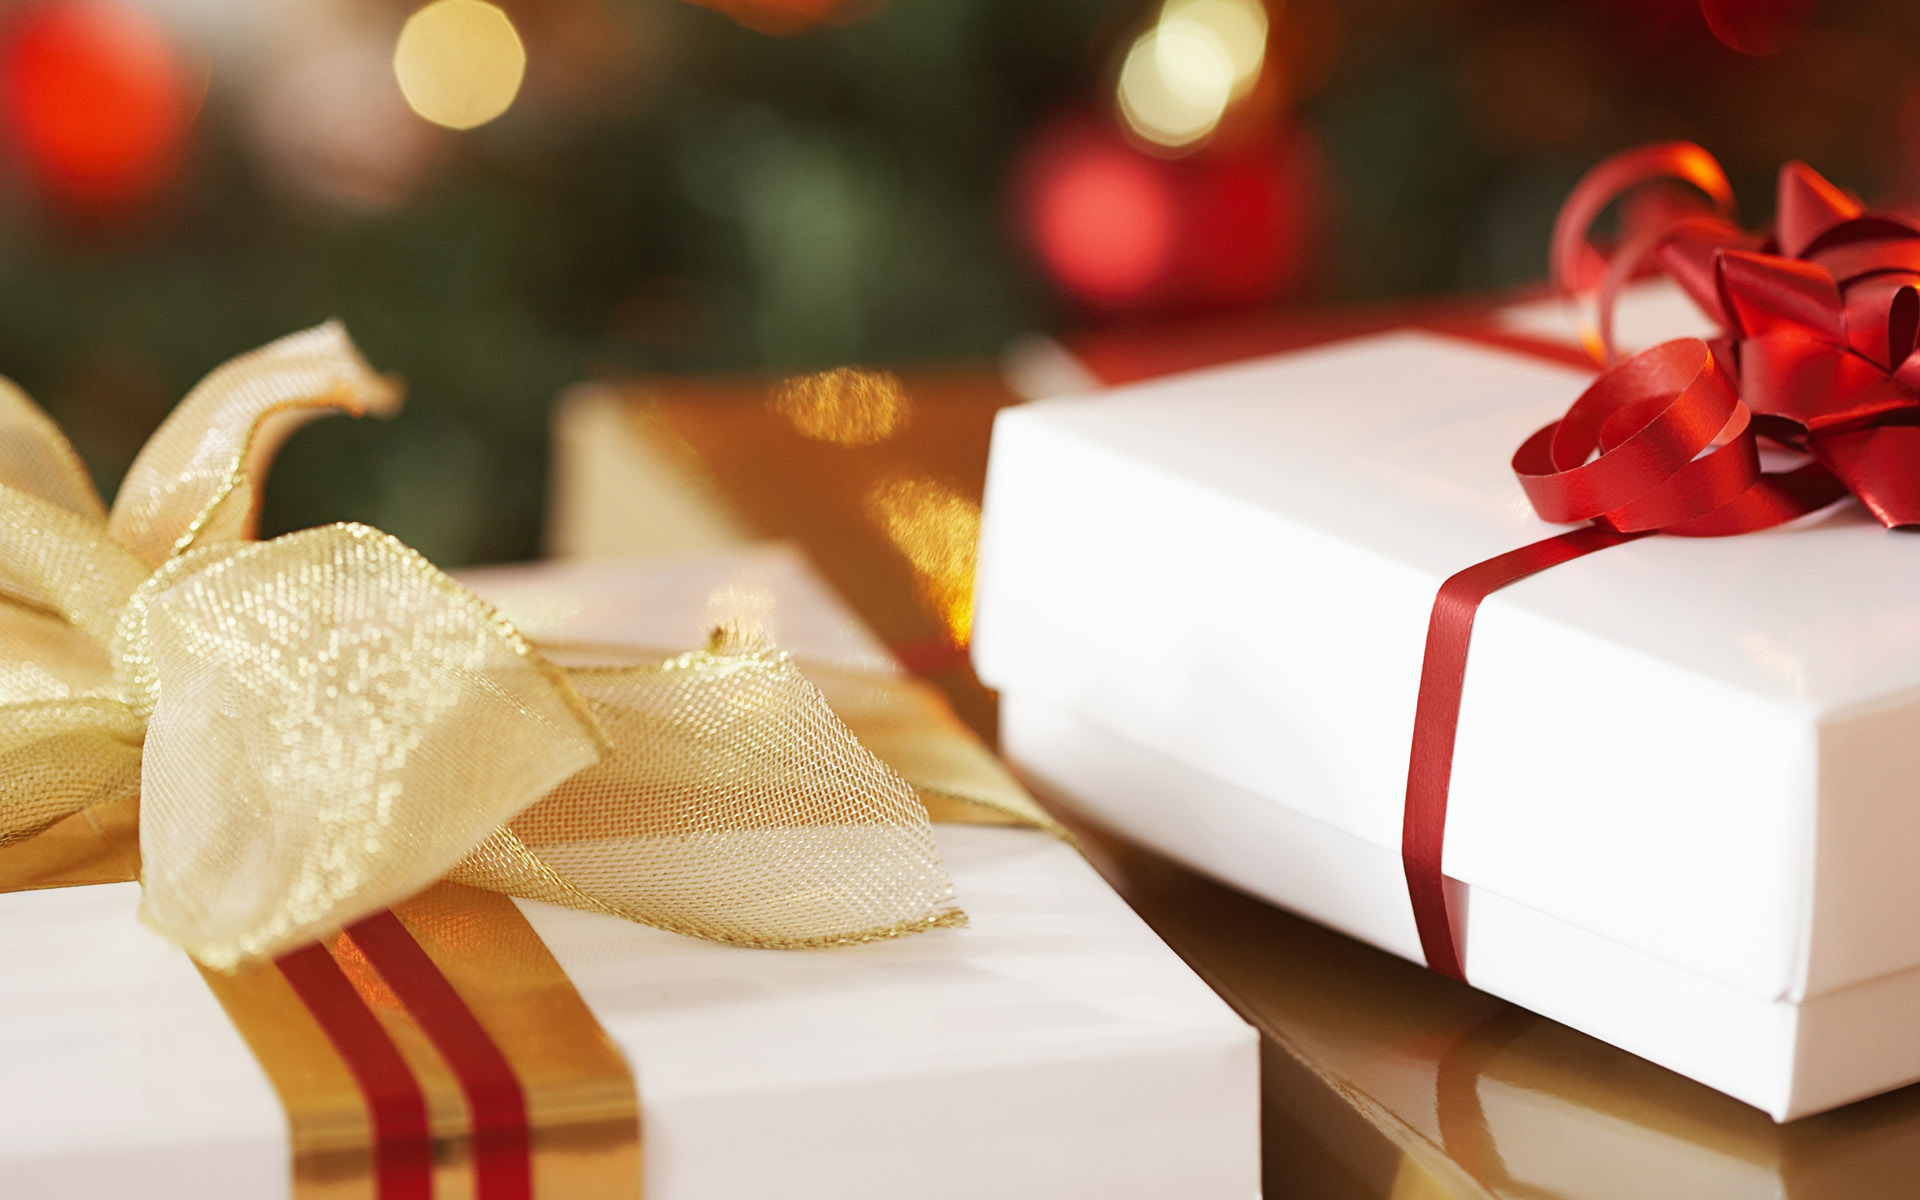 Что подарить на Новый Год? Гид по подаркам от редакции MacRadar